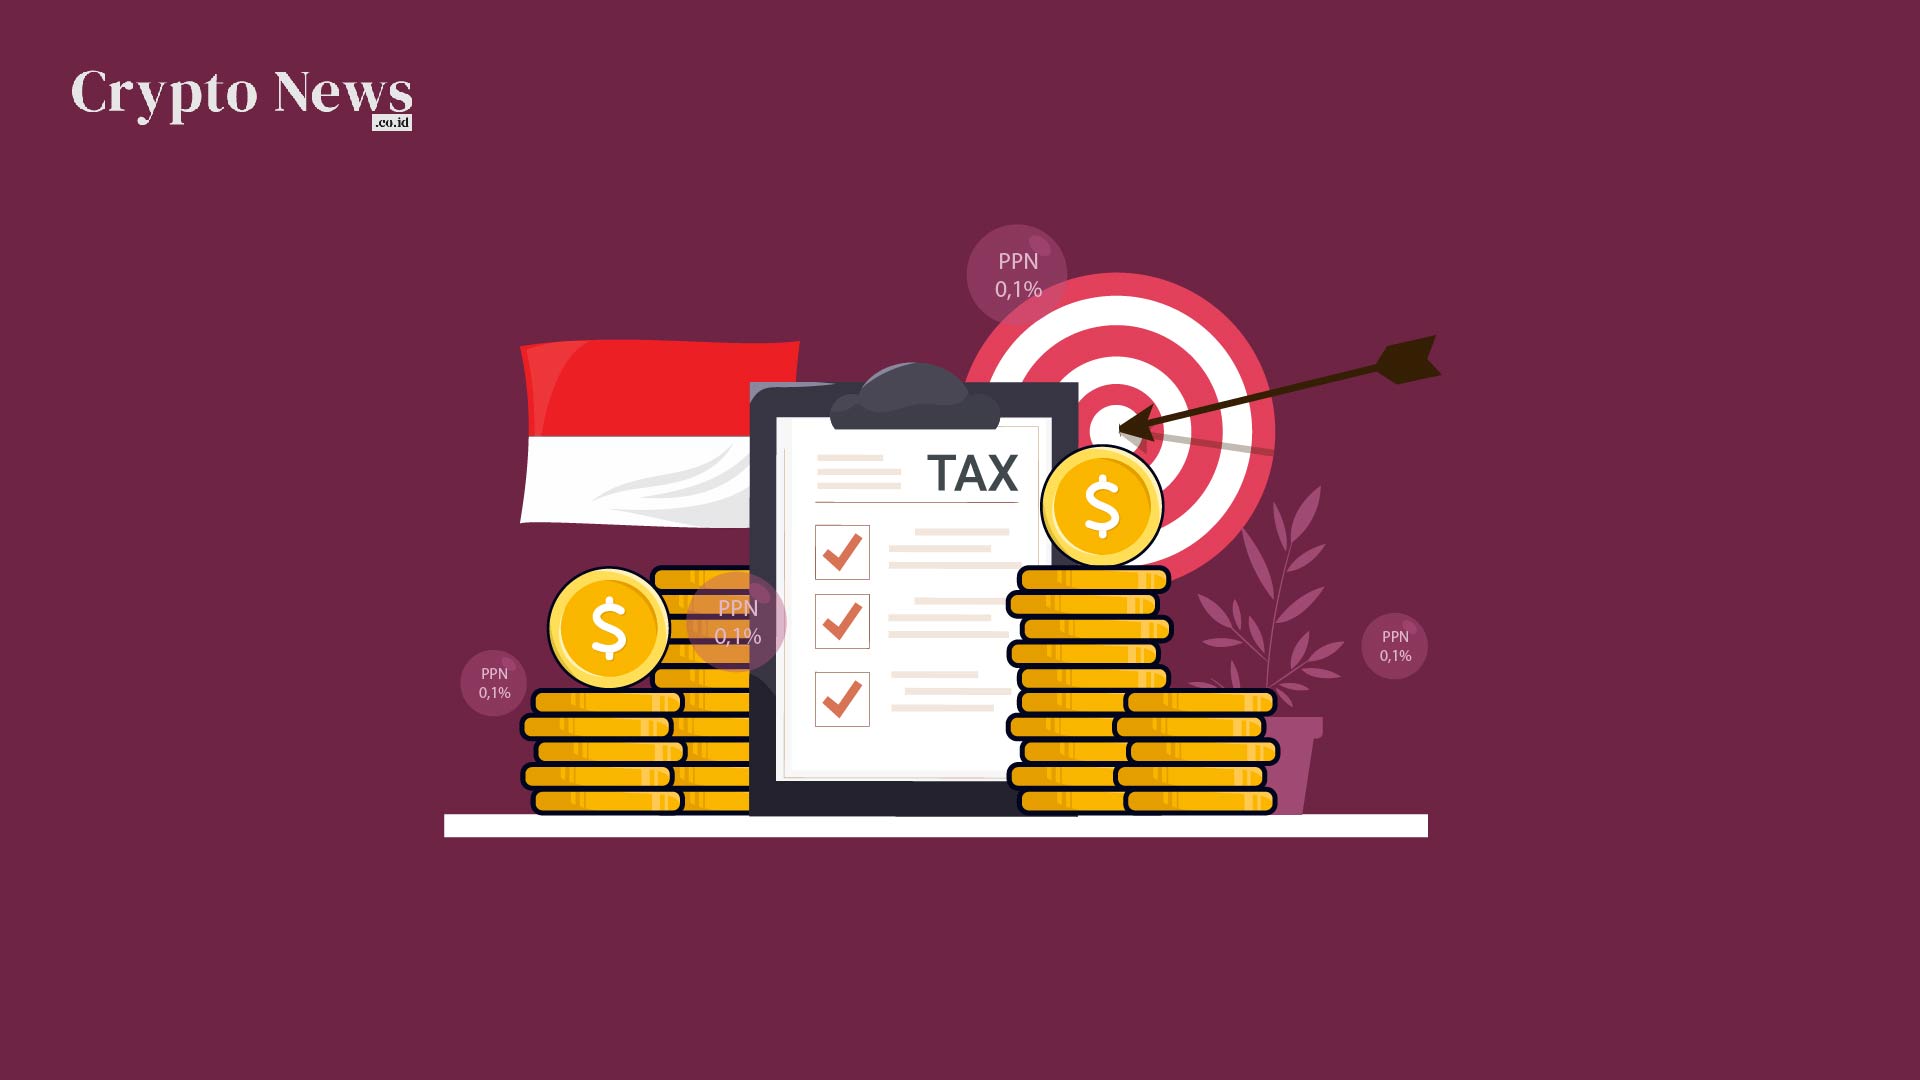 Illust : Indonesia Resmi Menerapkan Pajak dan PPN 0,1% untuk Pendapatan dan Pembelian Crypto